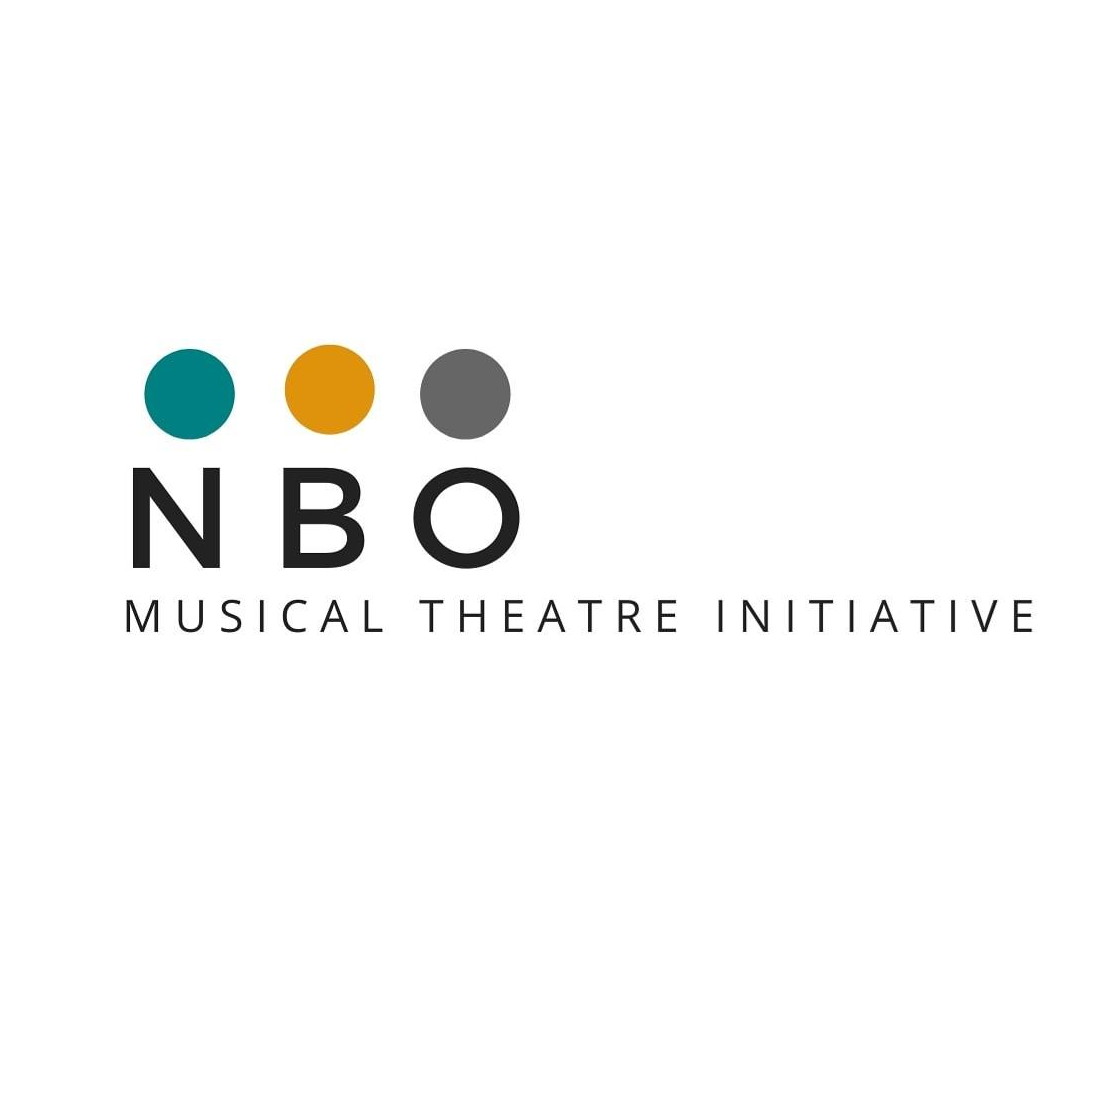 NBO musical theatre initiative logo.